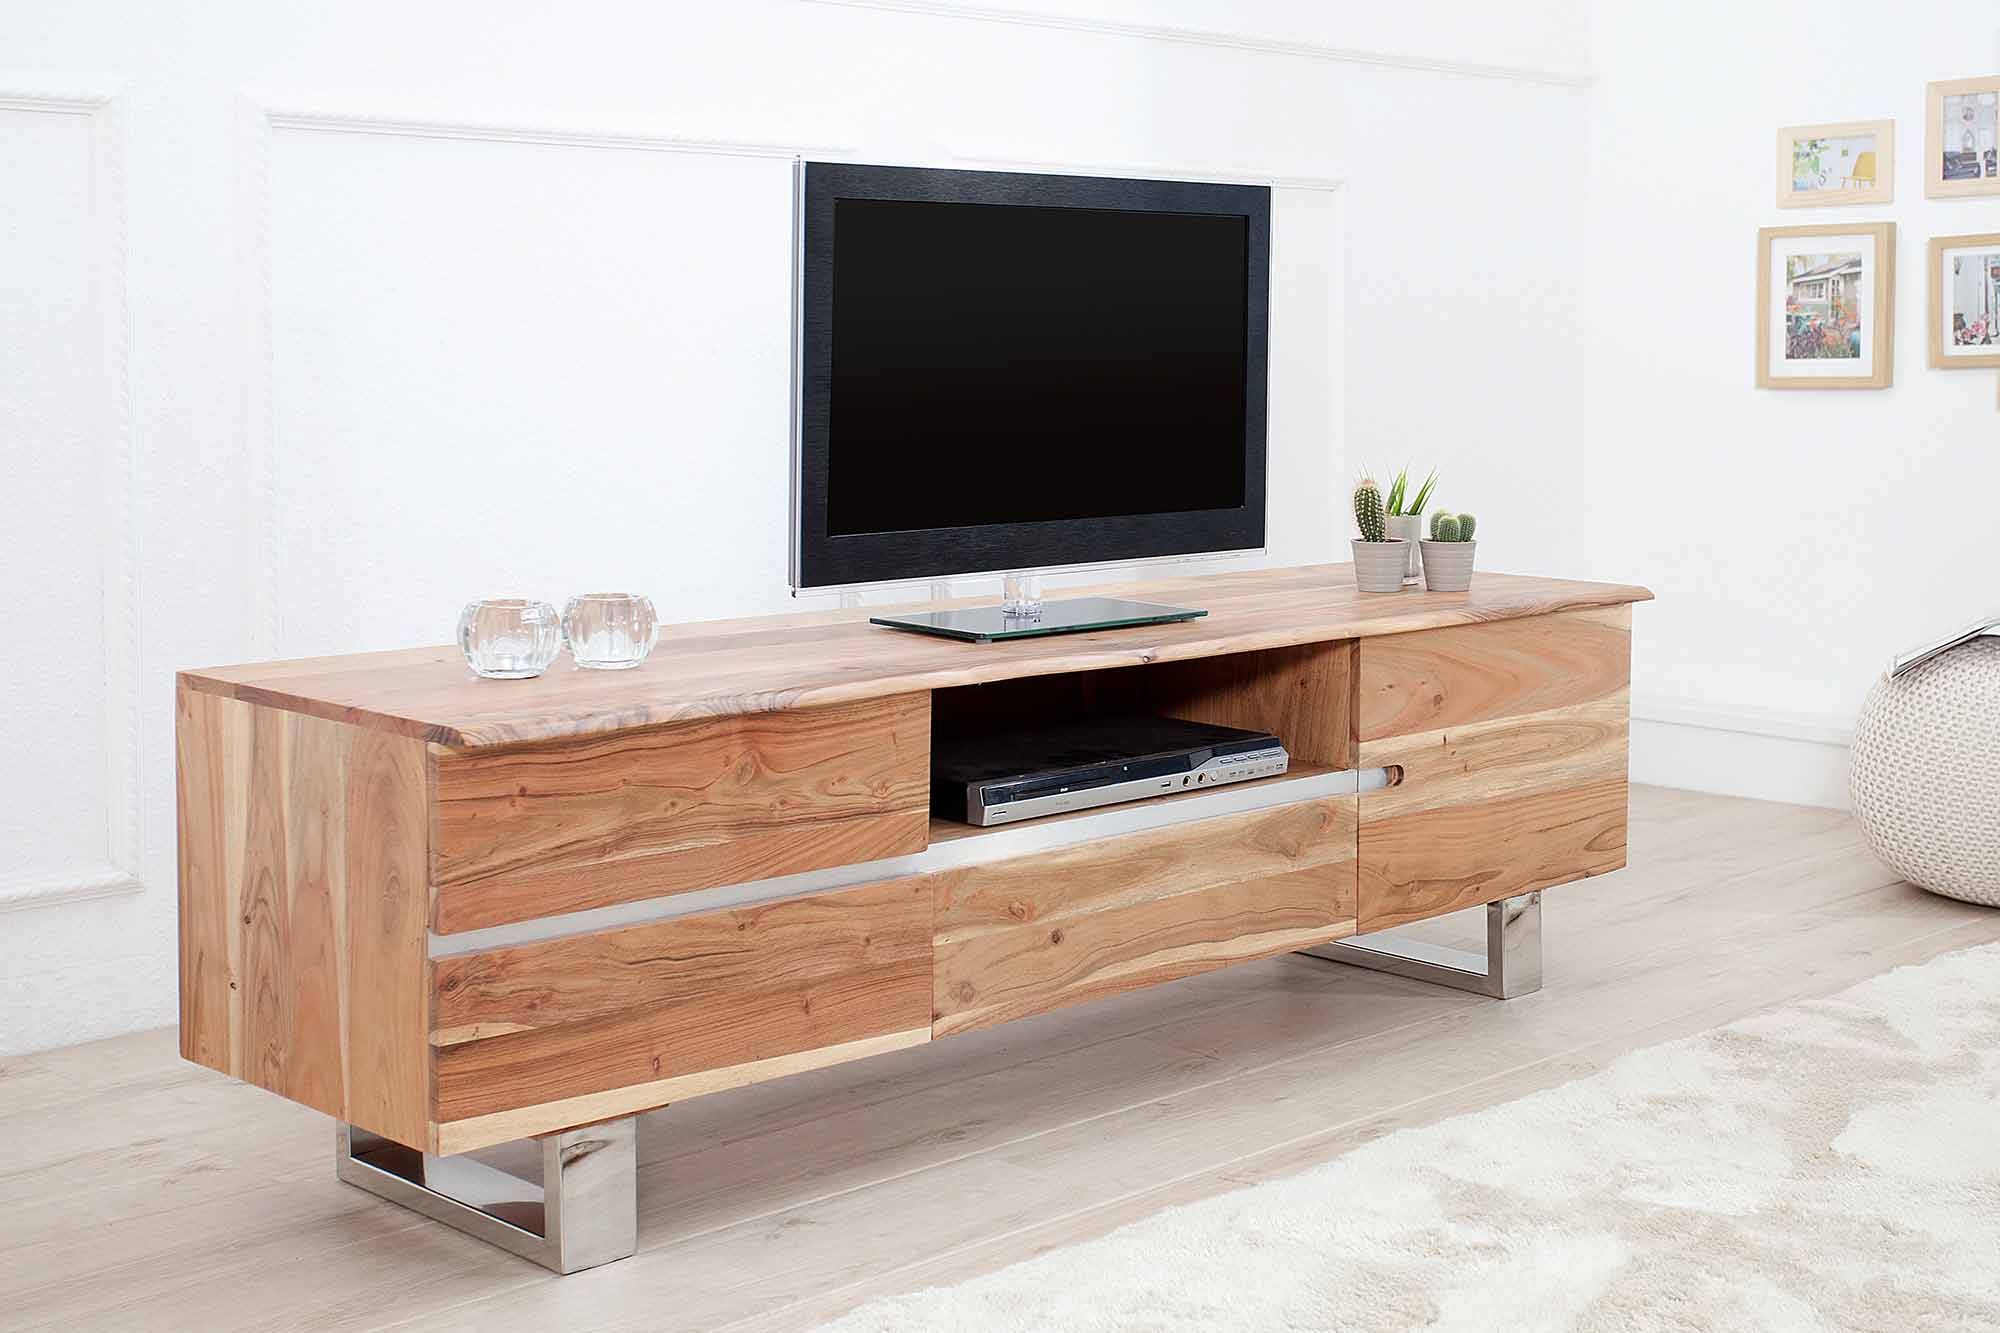 TV stolík, ktorý oživí vašu obývačku. Zdroj: iKuchyne.sk